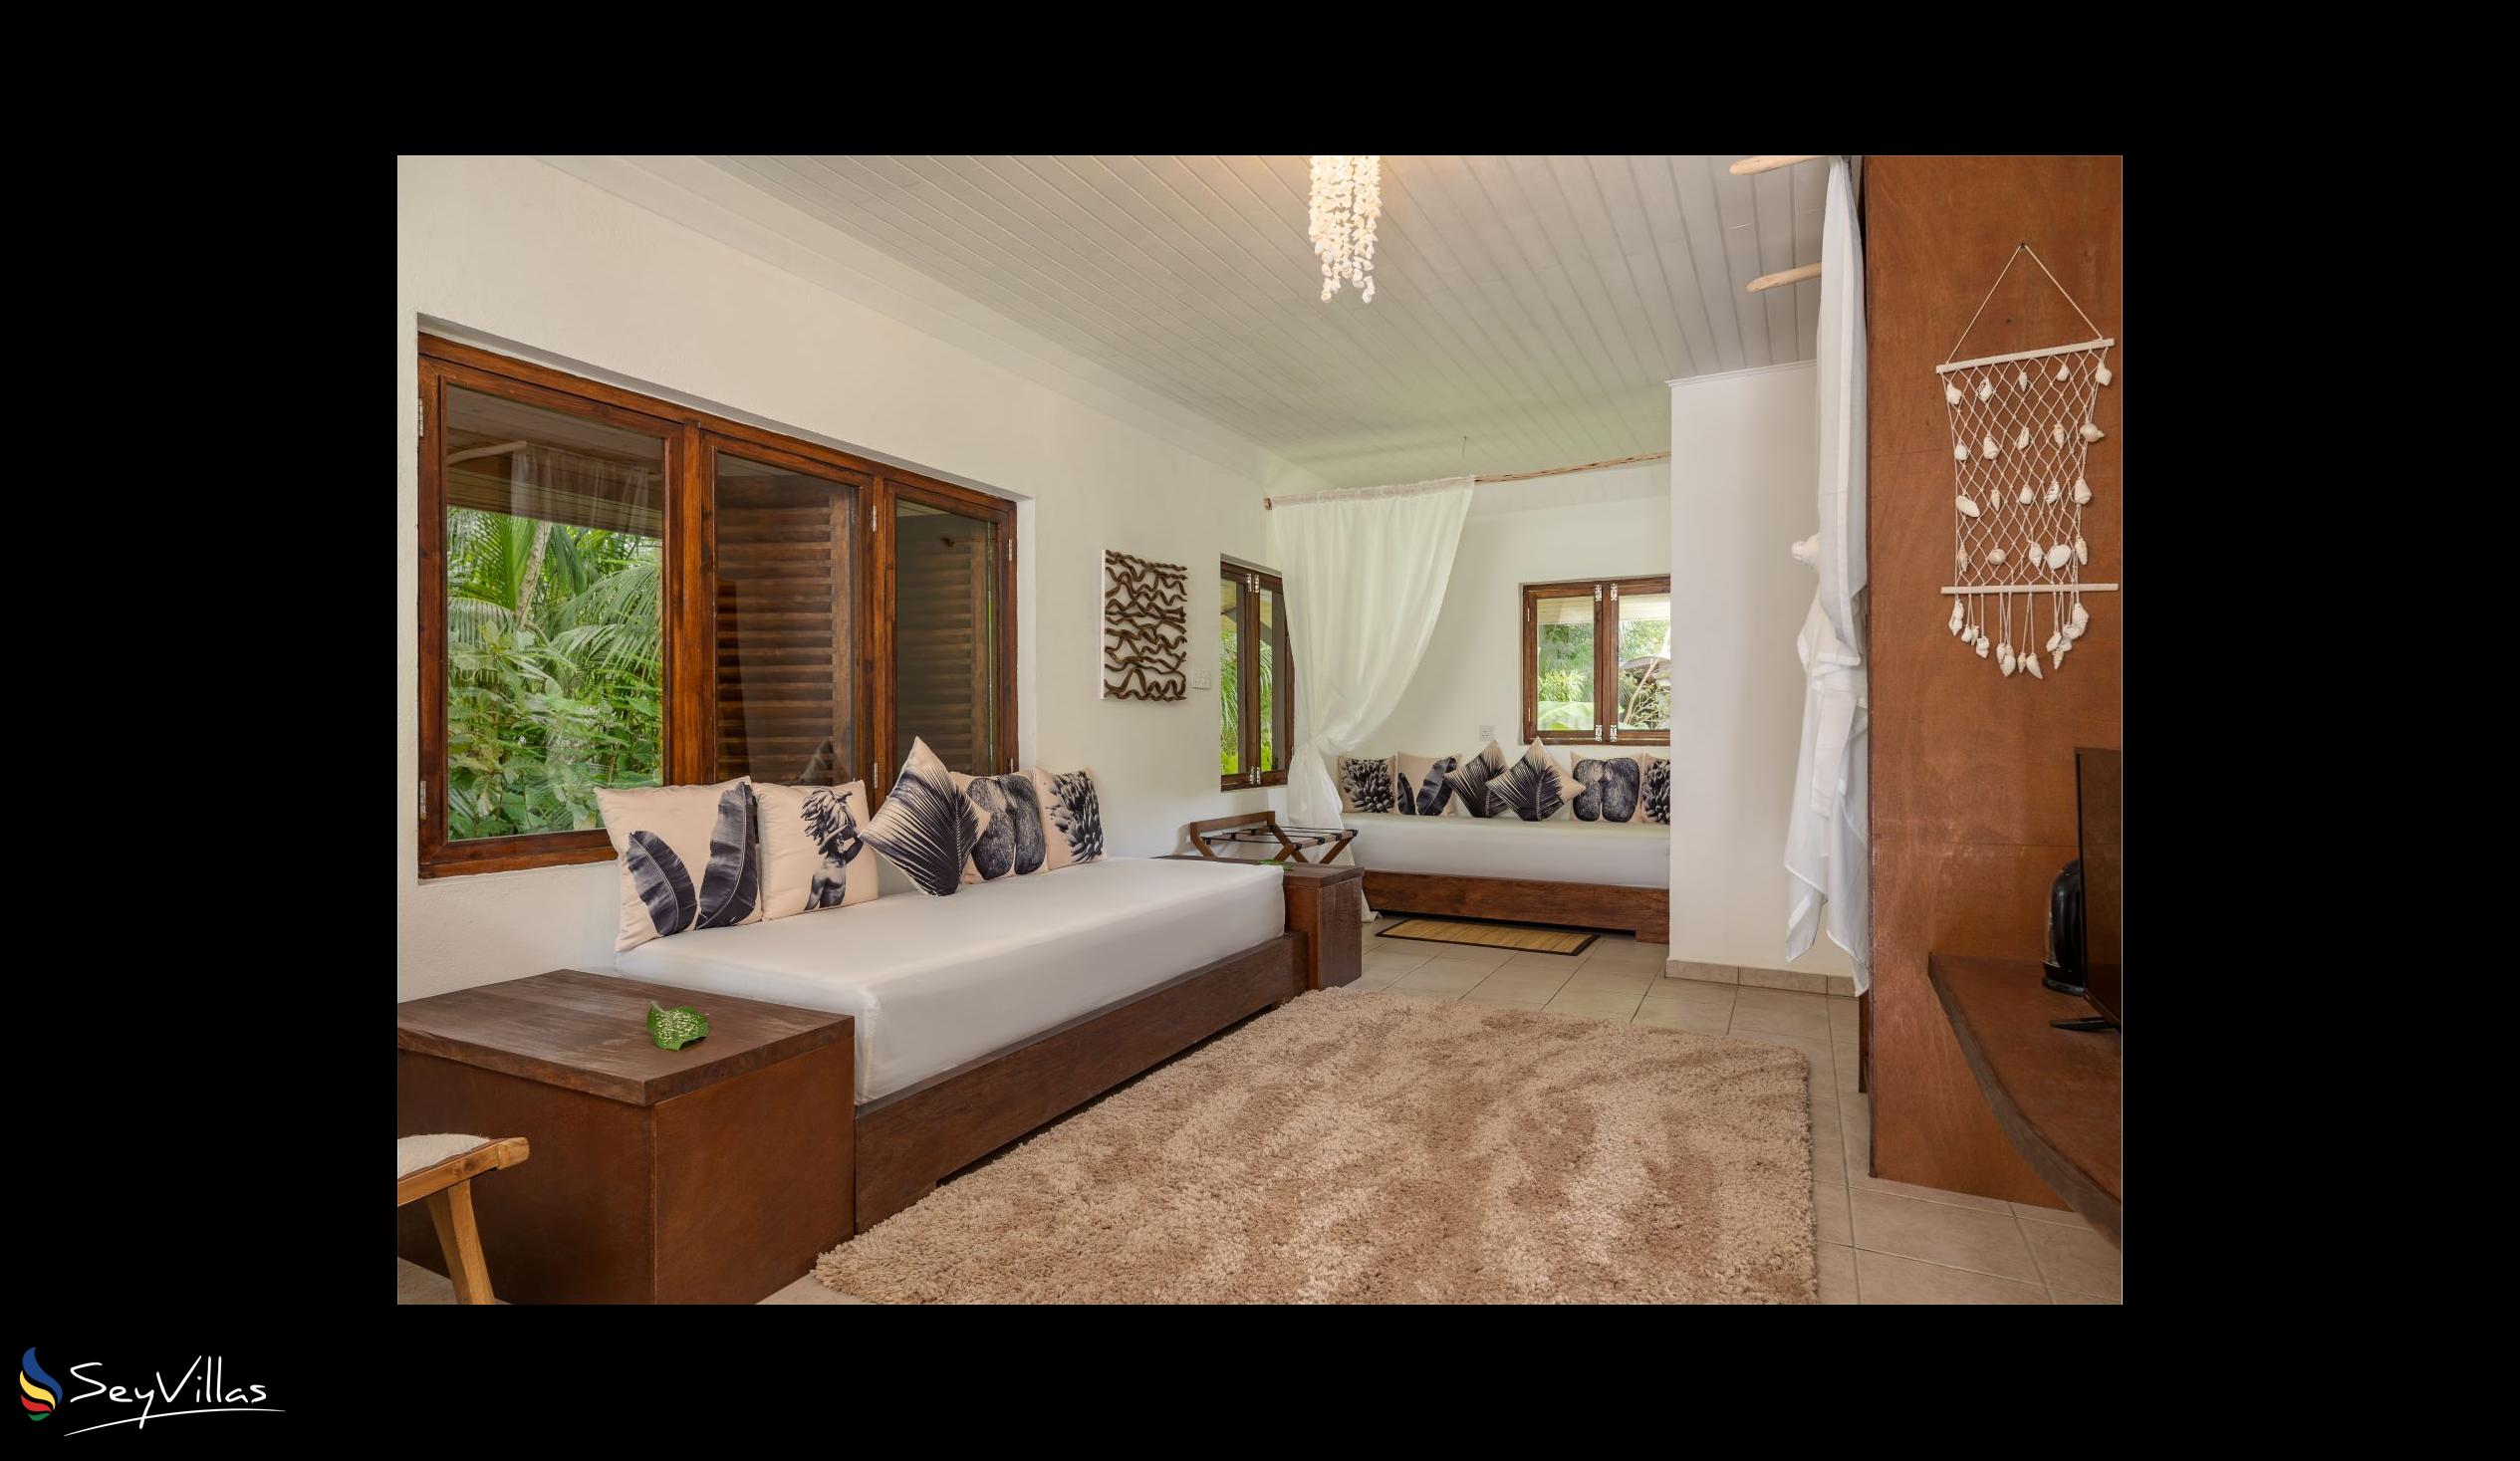 Photo 73: Bliss Hotel Praslin - Eden Garden - Family Suite - Praslin (Seychelles)